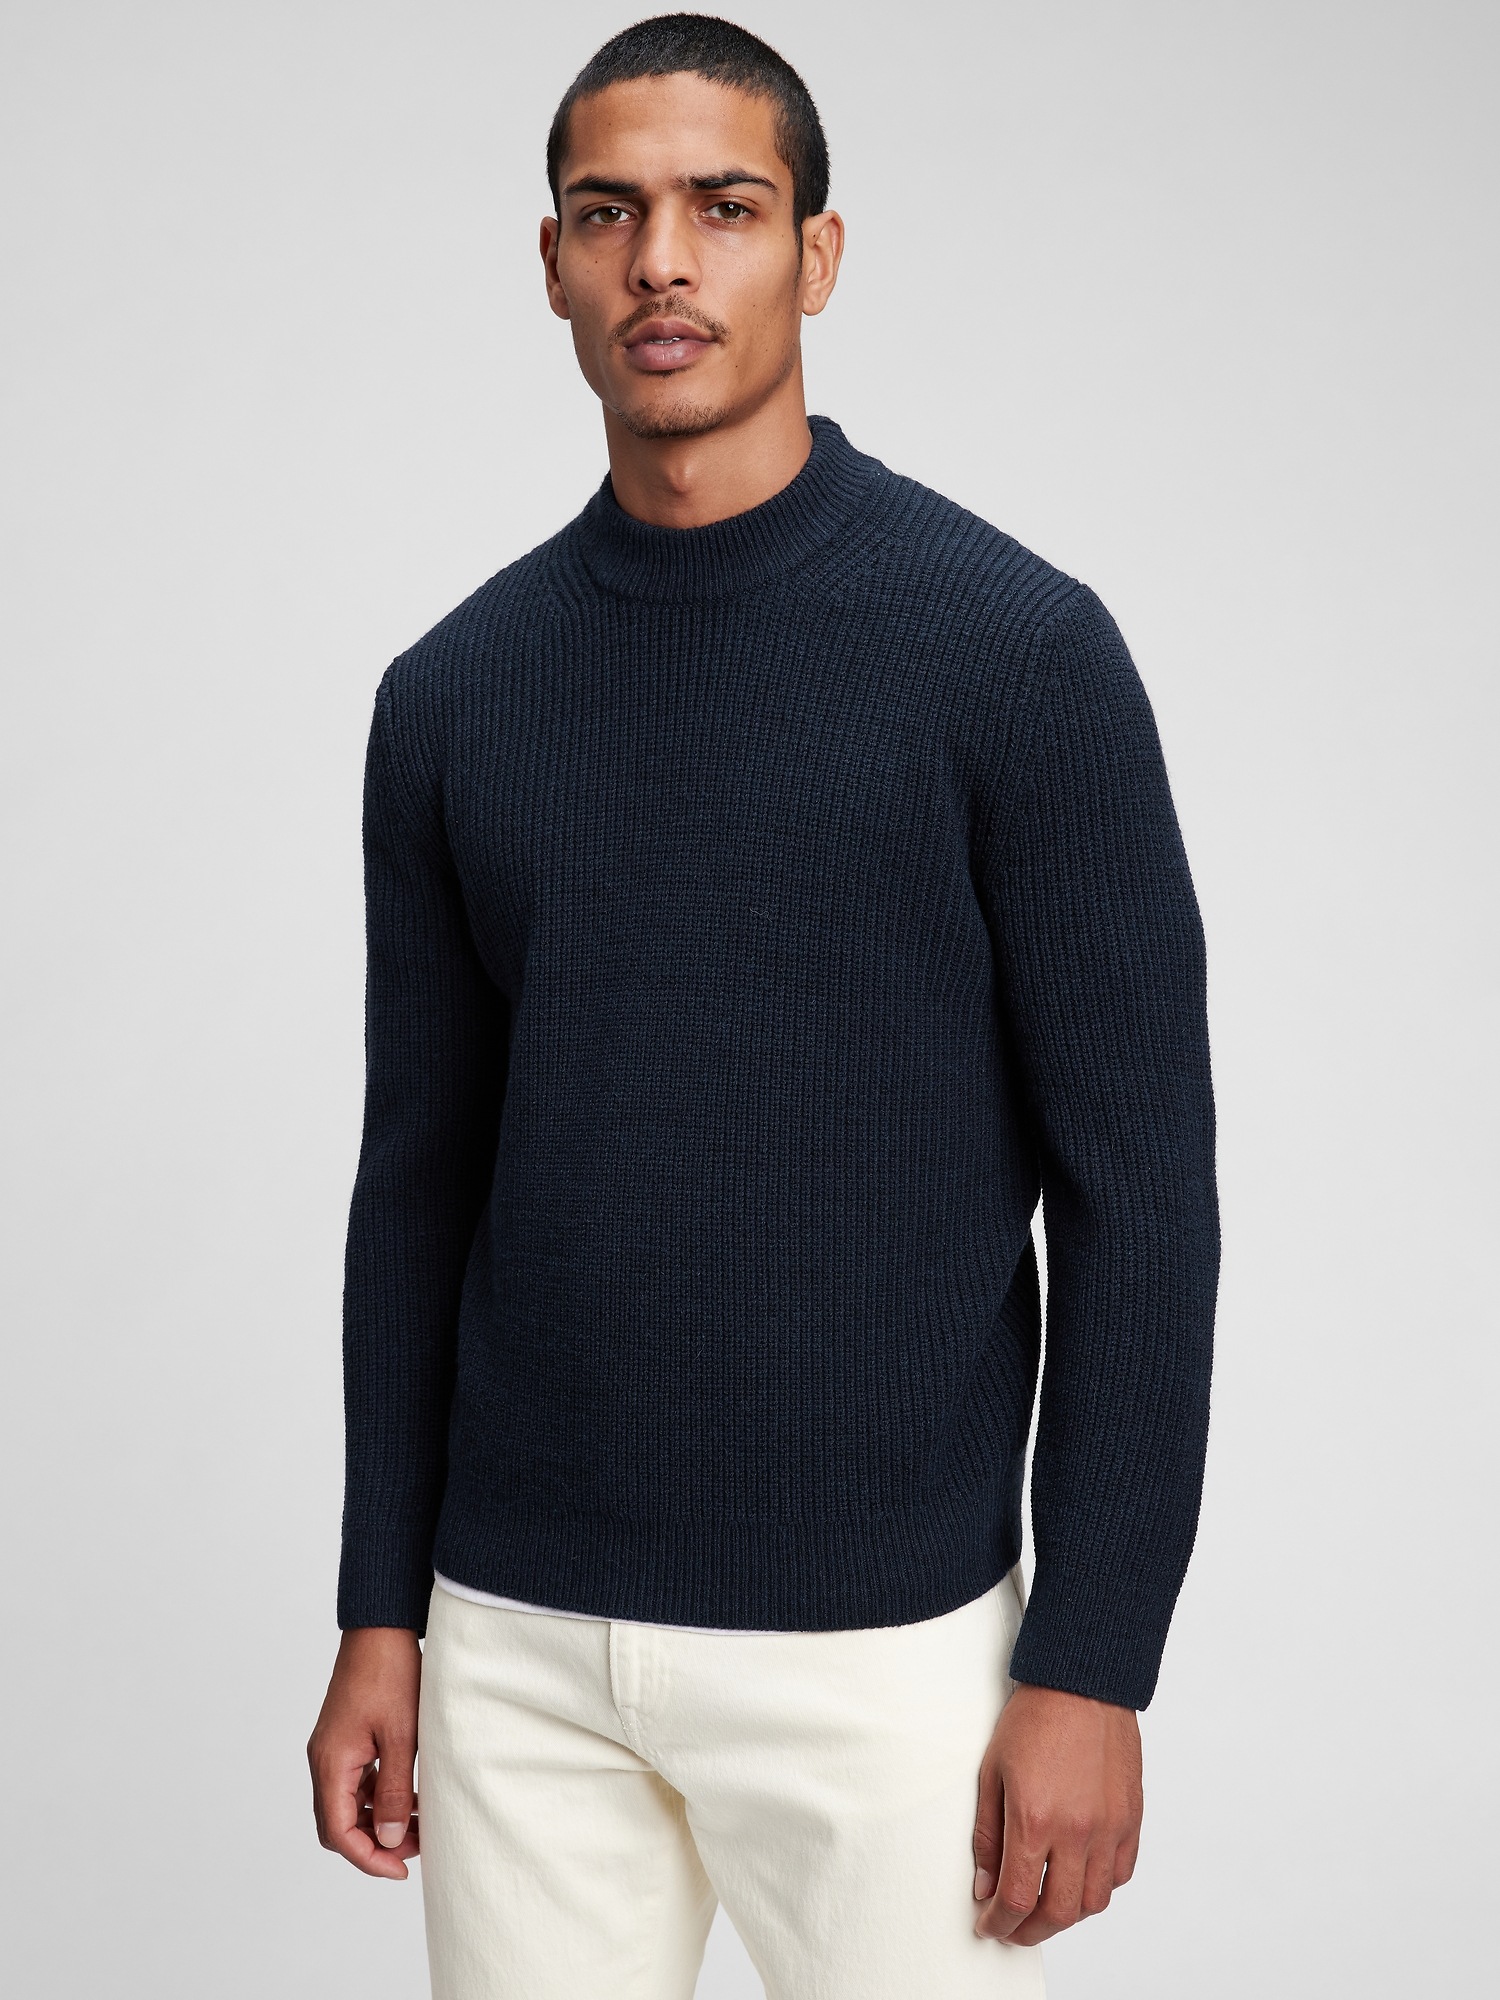 Merino Shaker-Stitch Mockneck Sweater | Gap